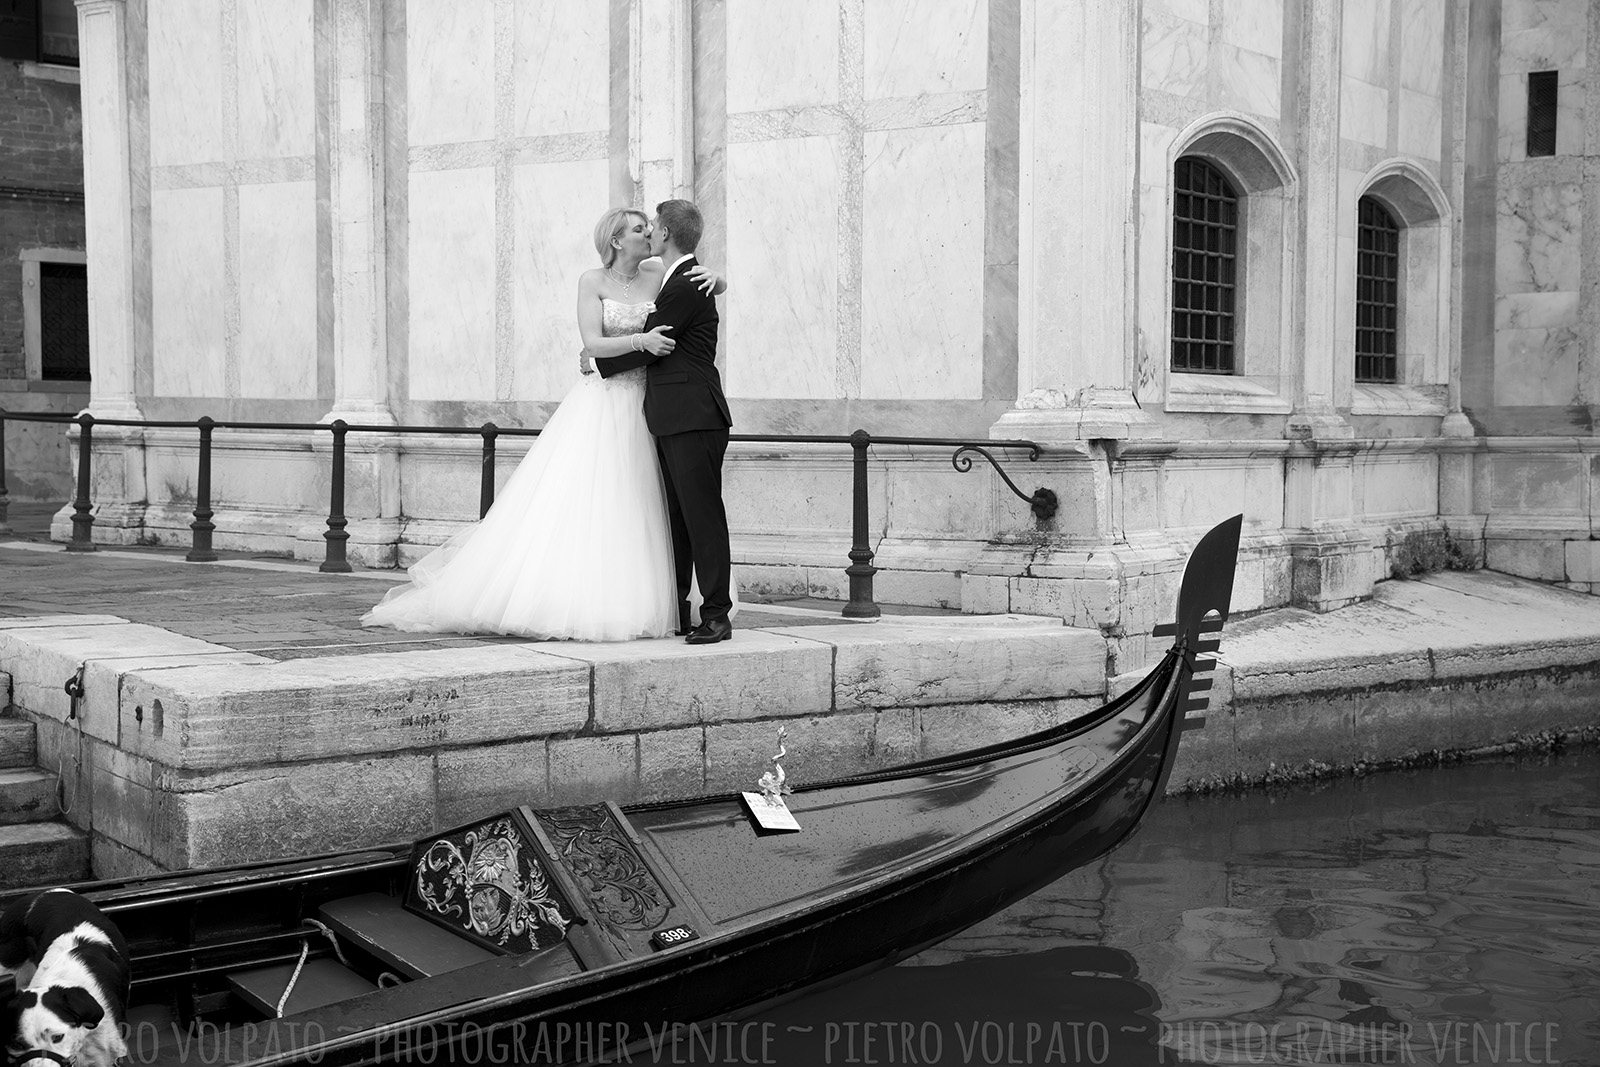 Servizio fotografico a Venezia durante passeggiata e giro gondola per coppia in luna di miele ~ Venezia fotografo per viaggio di nozze